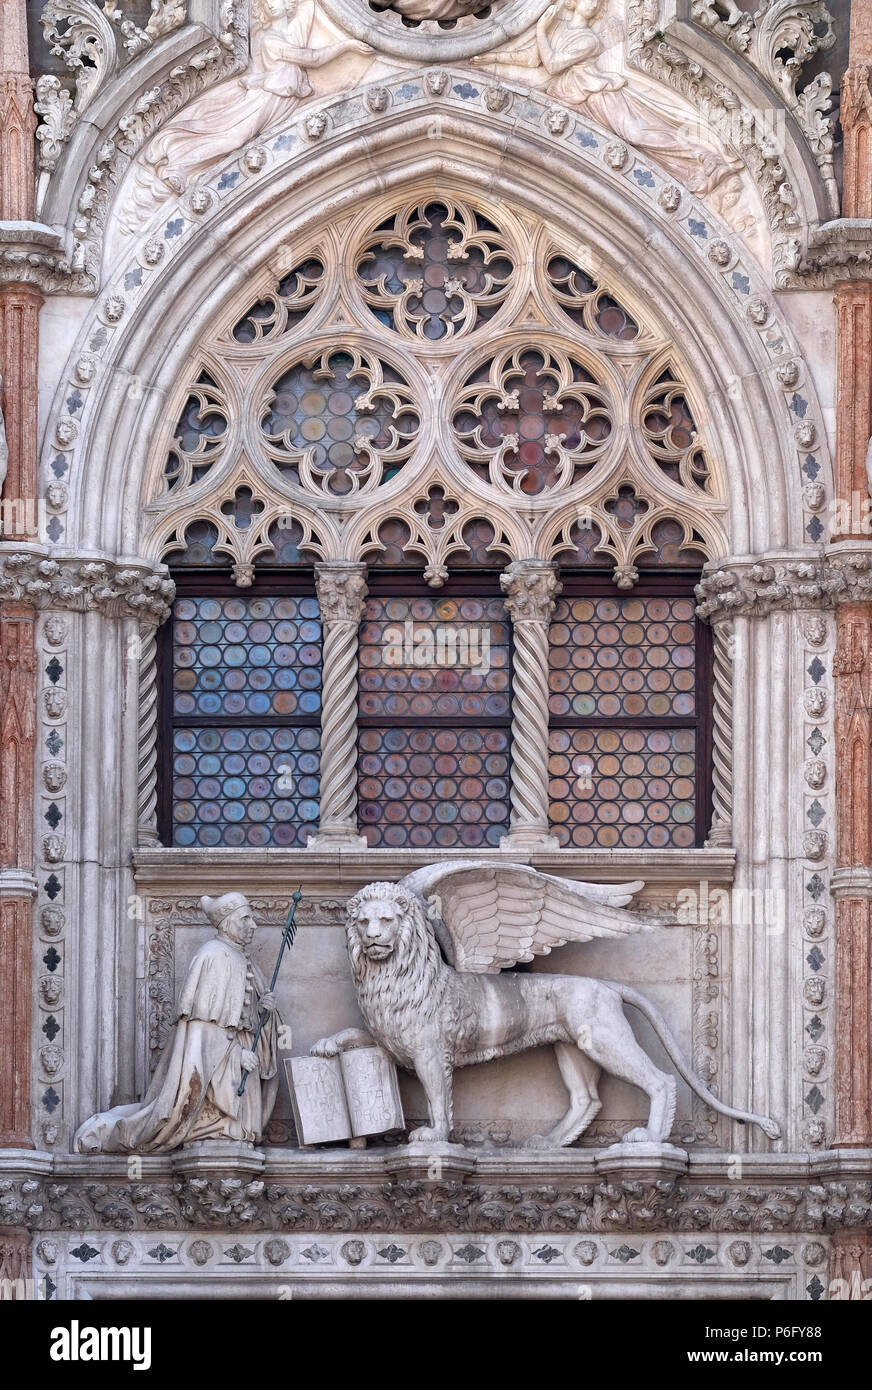 Dettaglio della Porta della Carta ingresso al Palazzo del Doge di Venezia, Italia, raffigurante il Doge Francesco Foscari inginocchiata davanti il Leone di San Marco Foto Stock